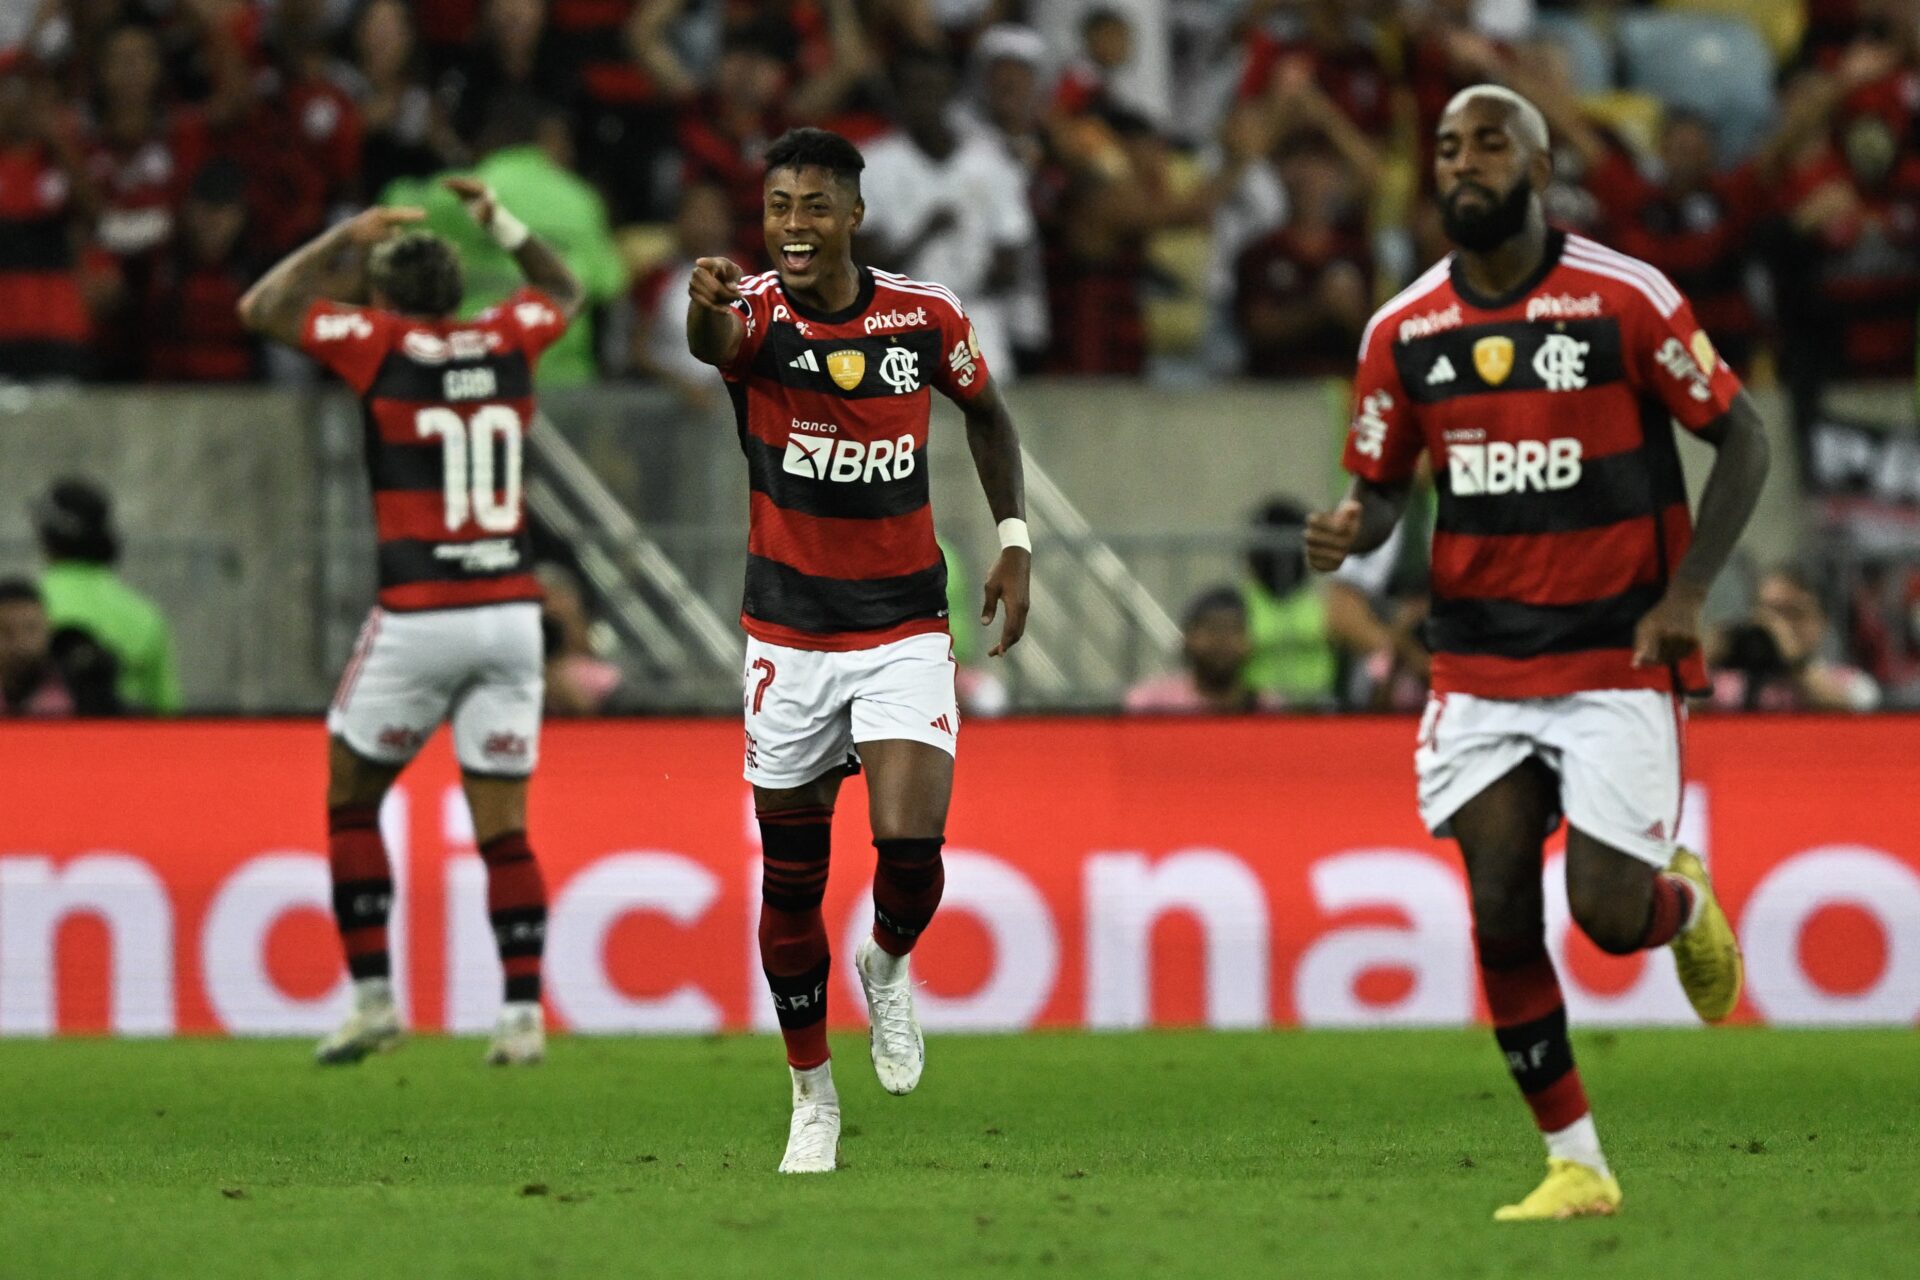 Flamengo on X: Amanhã tem Mengão! Às 19h, o Mais Querido enfrenta